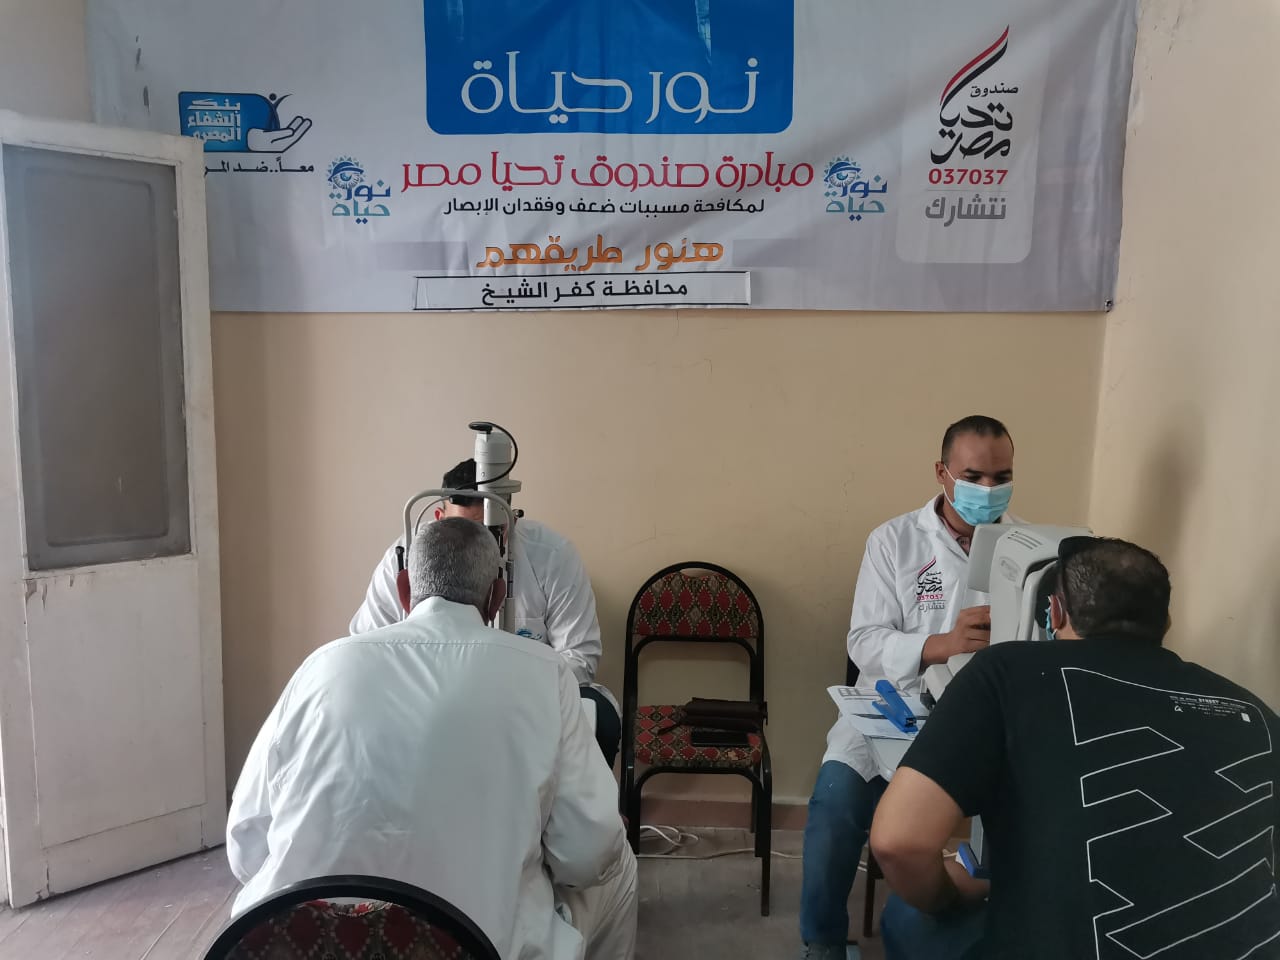 اجراء الكشف الطبي على المرضى قي قافلة يصندوق تحيا مصر